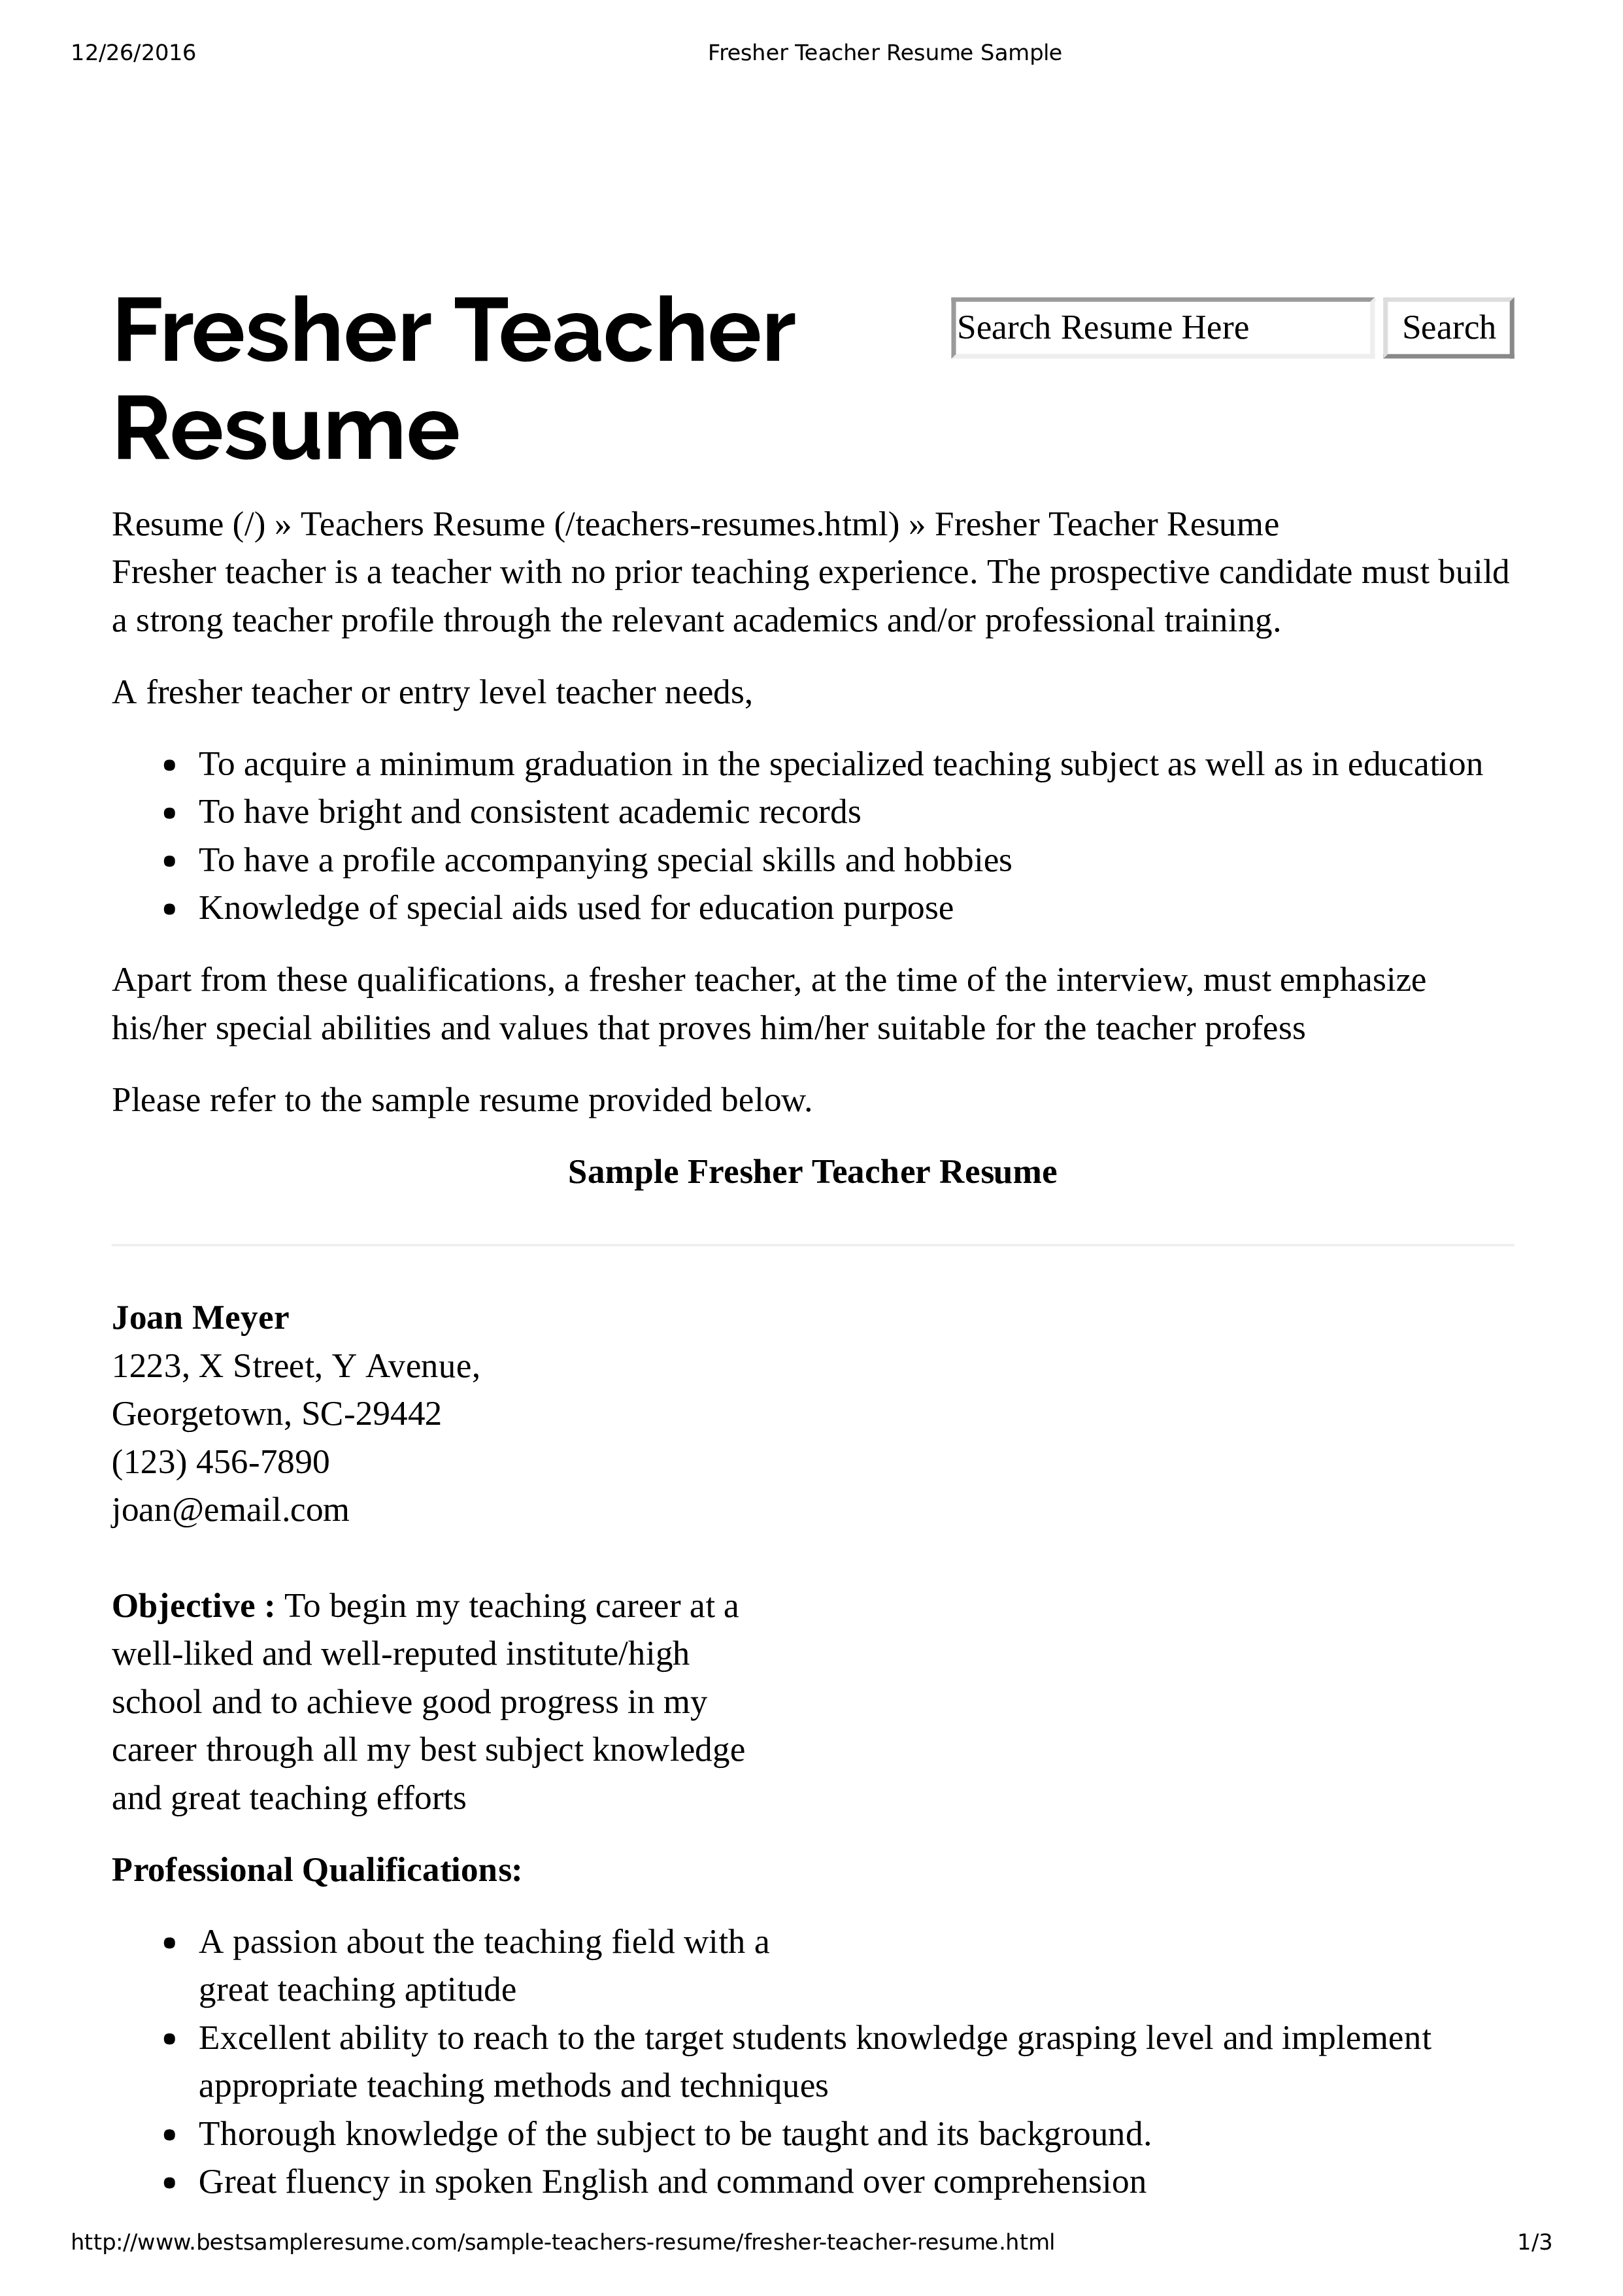 How to create a Preschool Teacher Resume for a teacher ...